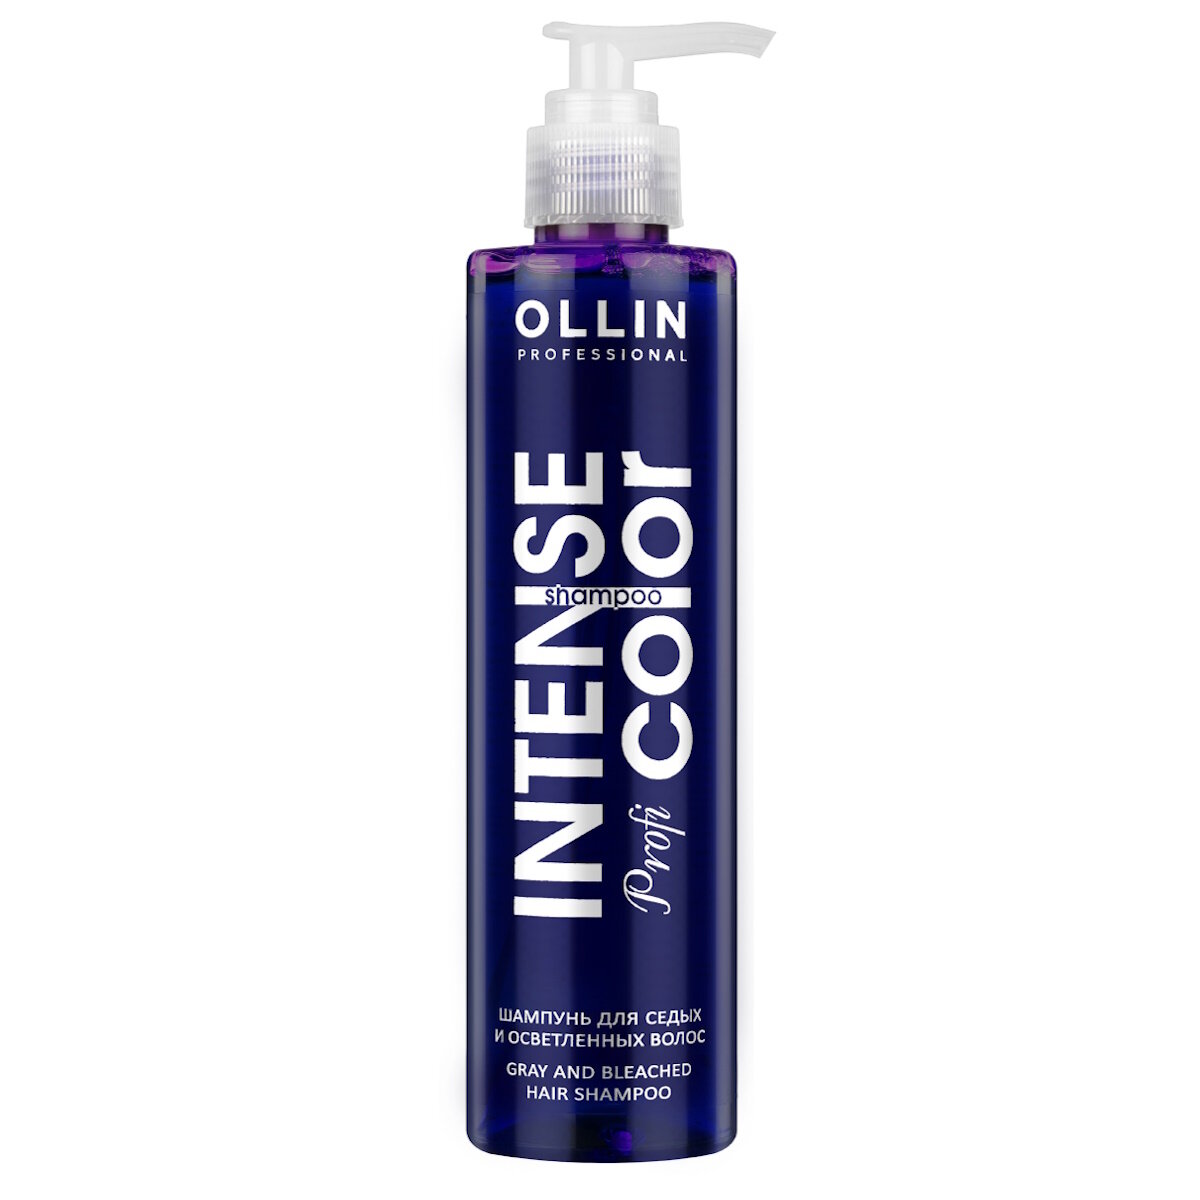 Ollin Professional Шампунь для седых и осветленных волос, 250 мл (Ollin Professional, ) - фото №6